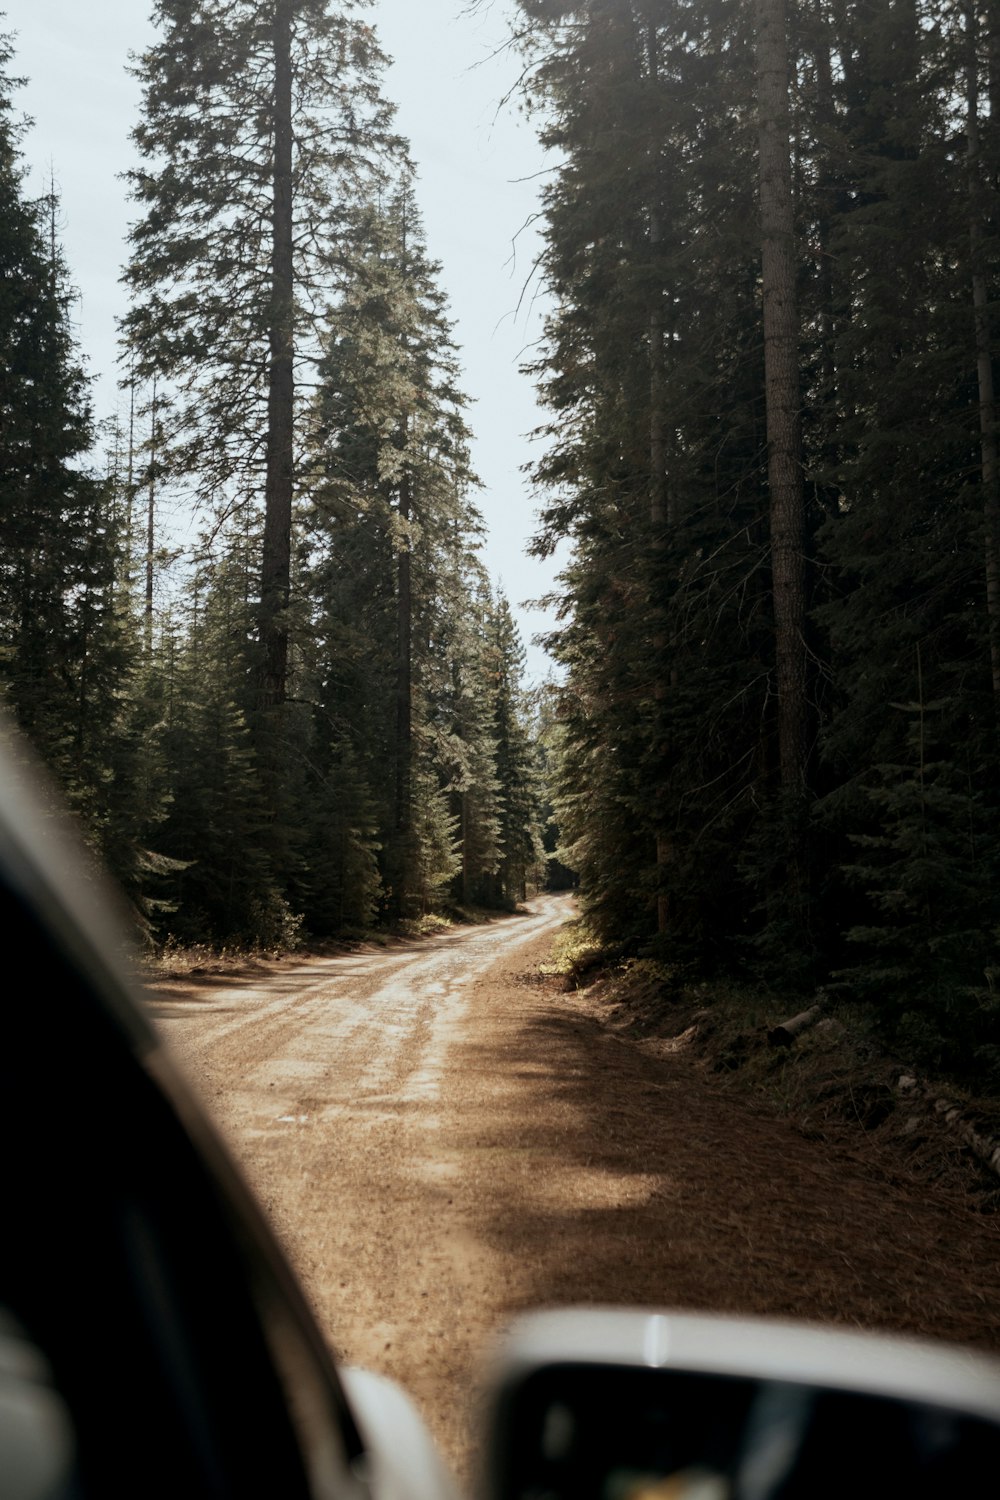 a car driving down a dirt road through a forest